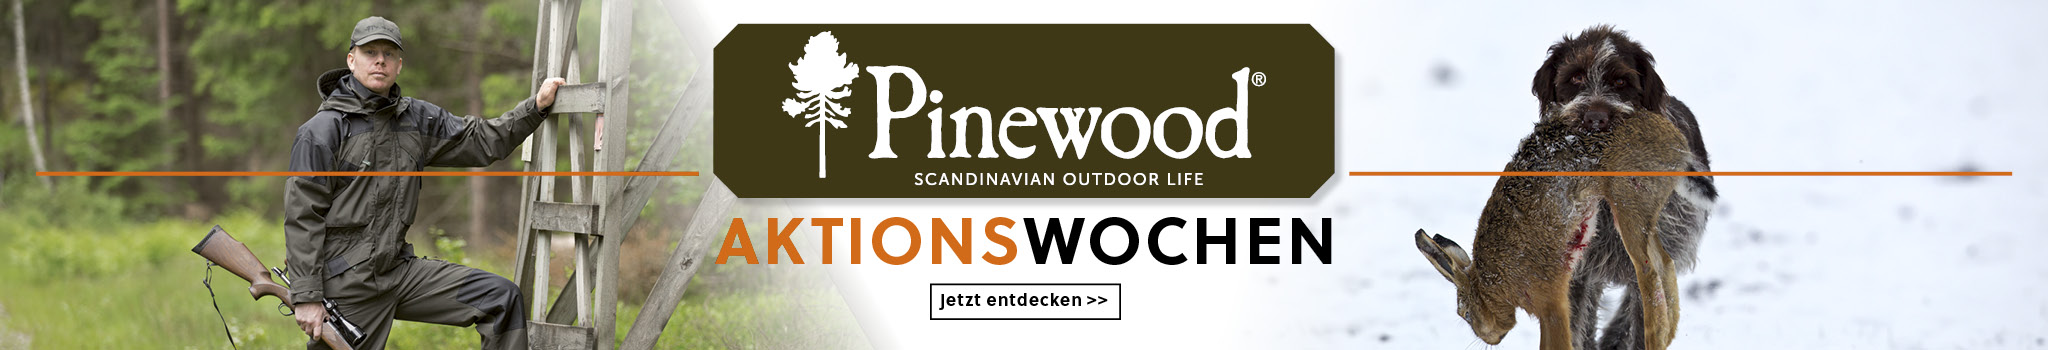 Pinewood Aktionswochen